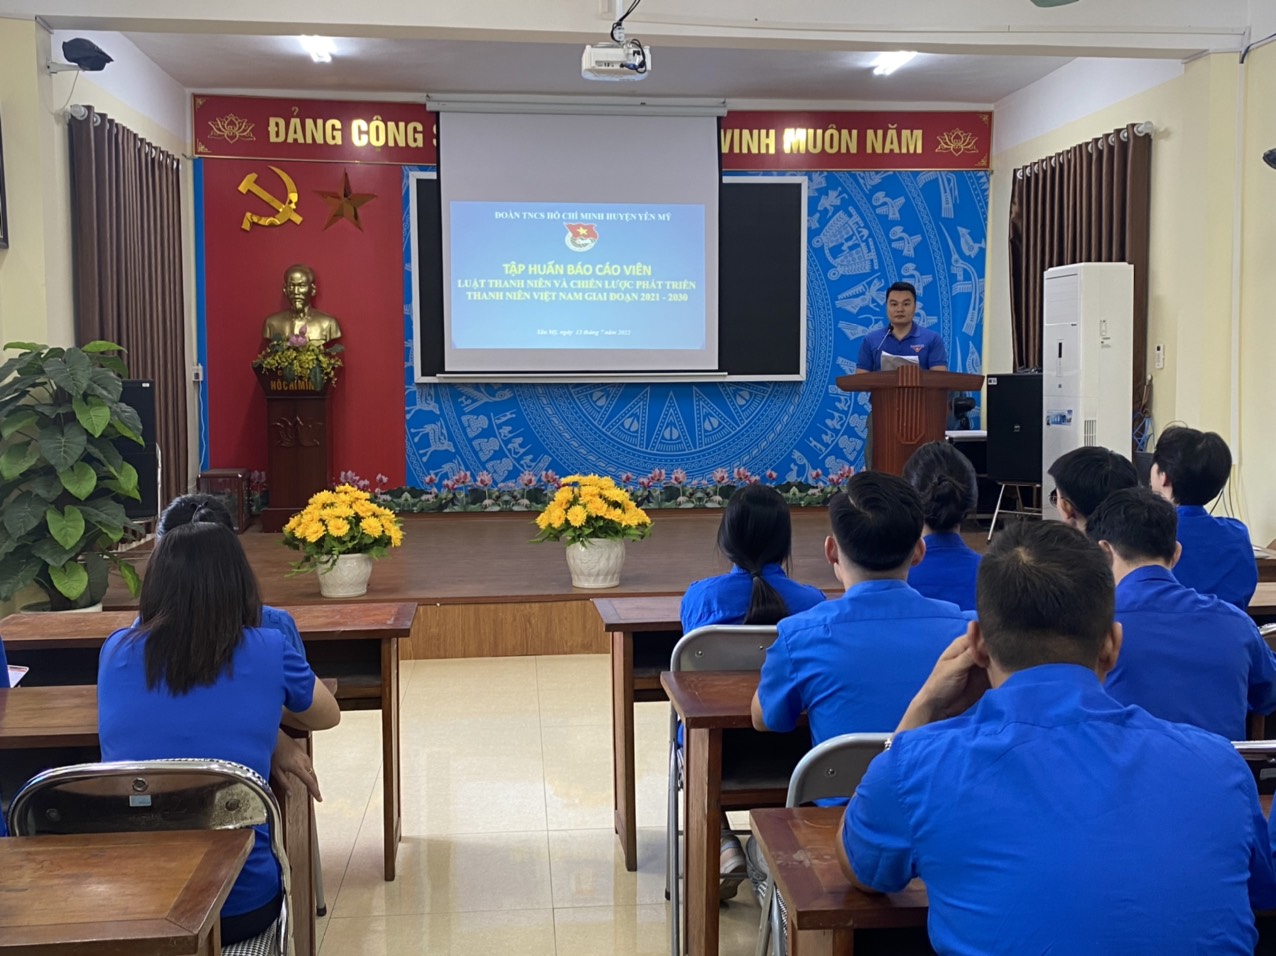 Huyện đoàn Yên Mỹ  khai giảng lớp tập huấn báo cáo viên: Luật thanh niên và chiến lược phát triển thanh niên Việt Nam giai đoạn 2021-2030